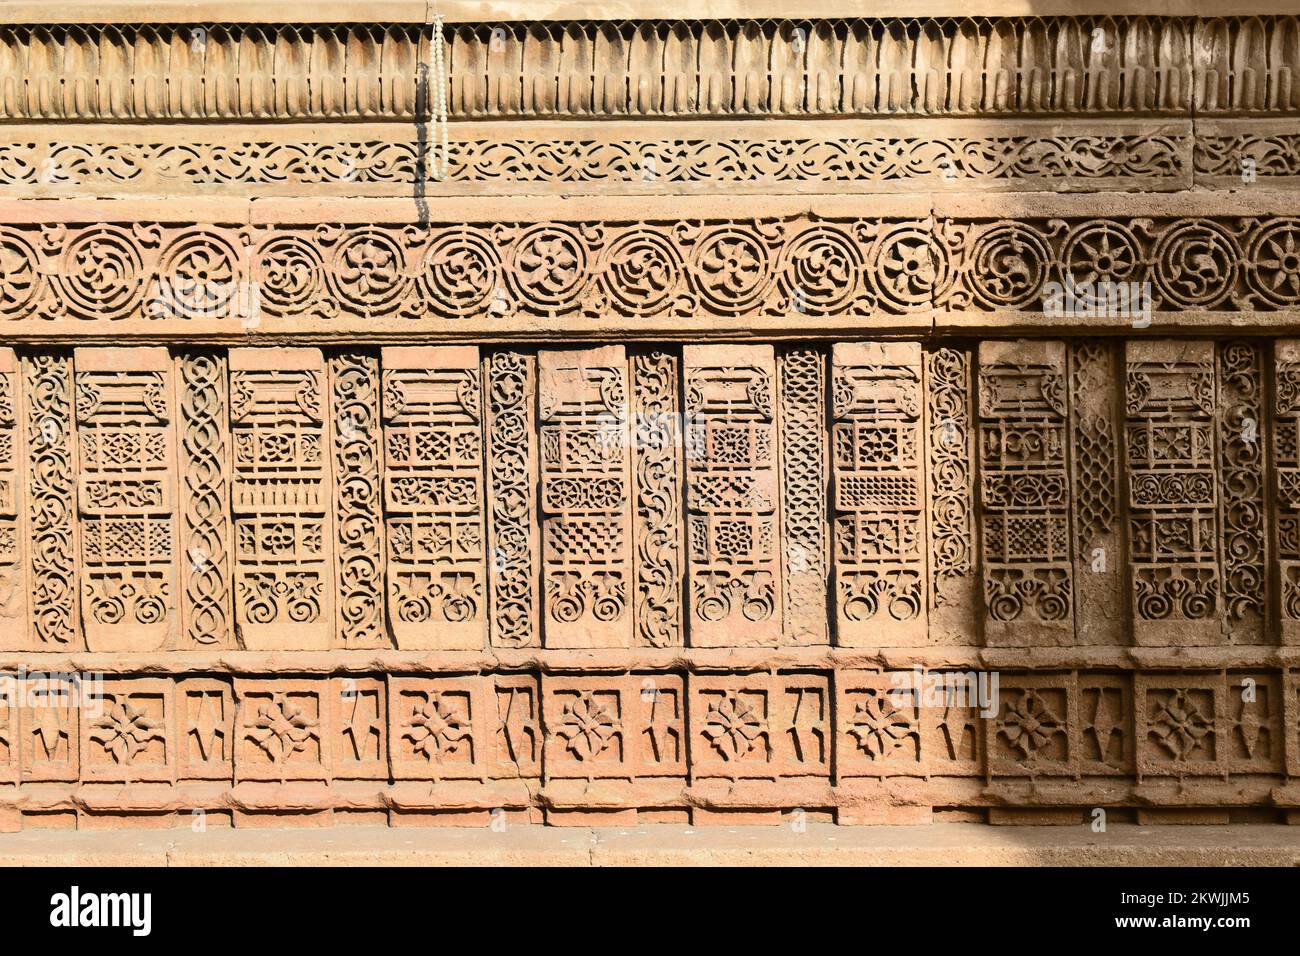 Tombe de Rani SIPRI à Masjid-e-nagina, détails de sculpture de pierre de mur extérieur, architecture islamique, construit en A.H. 920 (A.D. 1514) par Rani Sabrai pendant t Banque D'Images